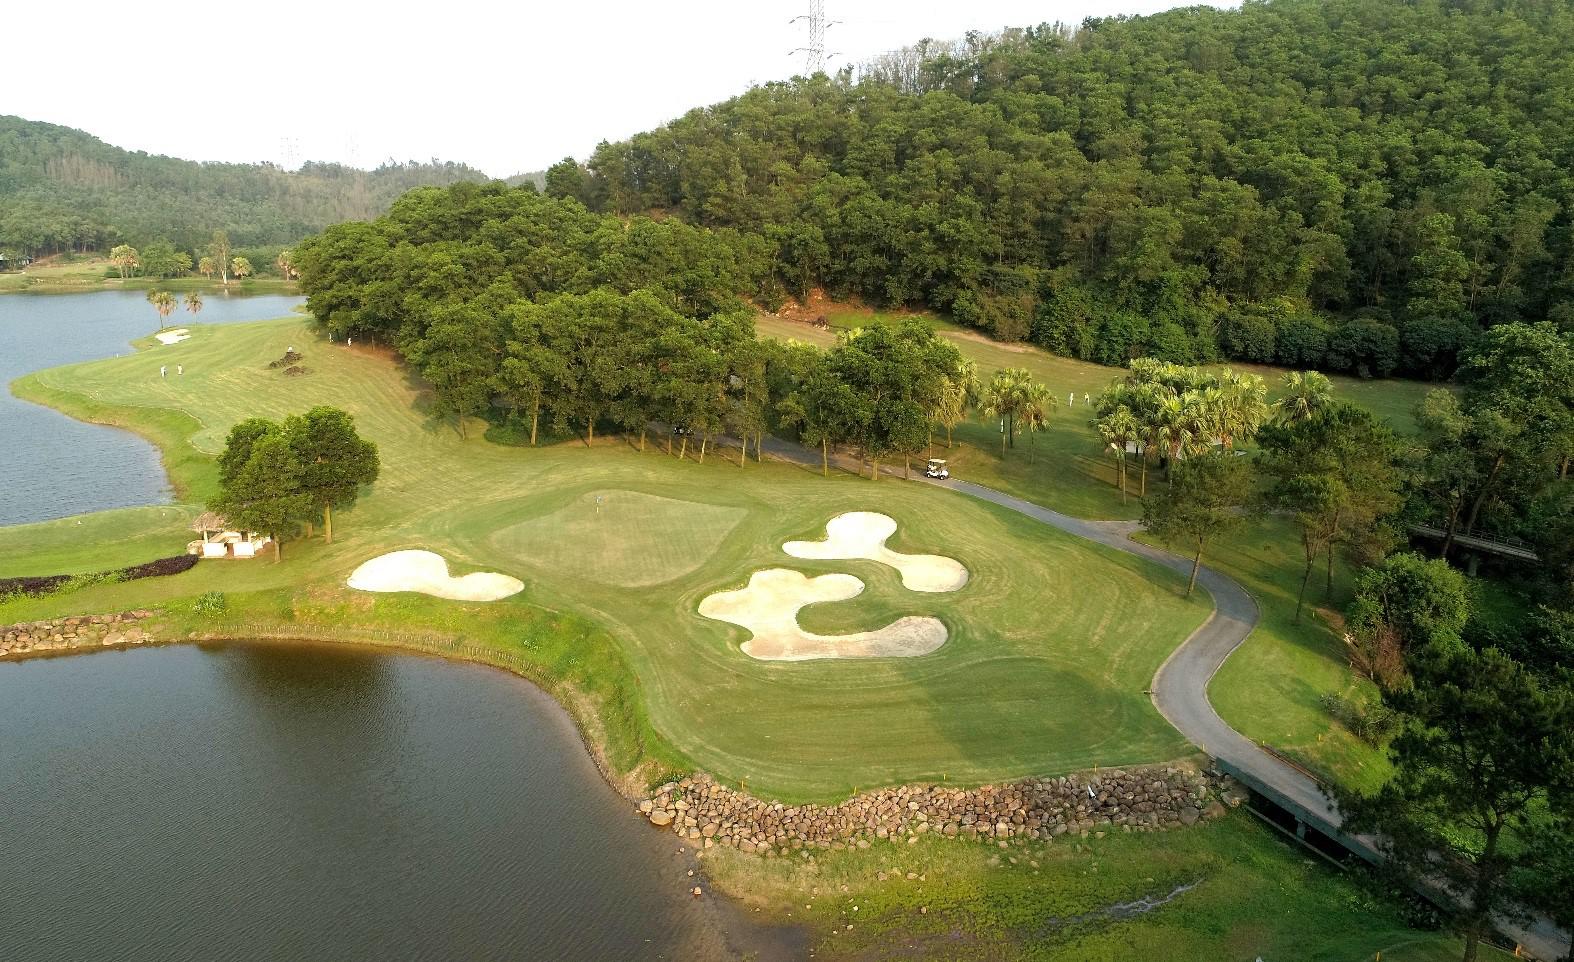 Ưu đãi hè chơi golf không giới hạn sân golf Chí Linh 18 hố